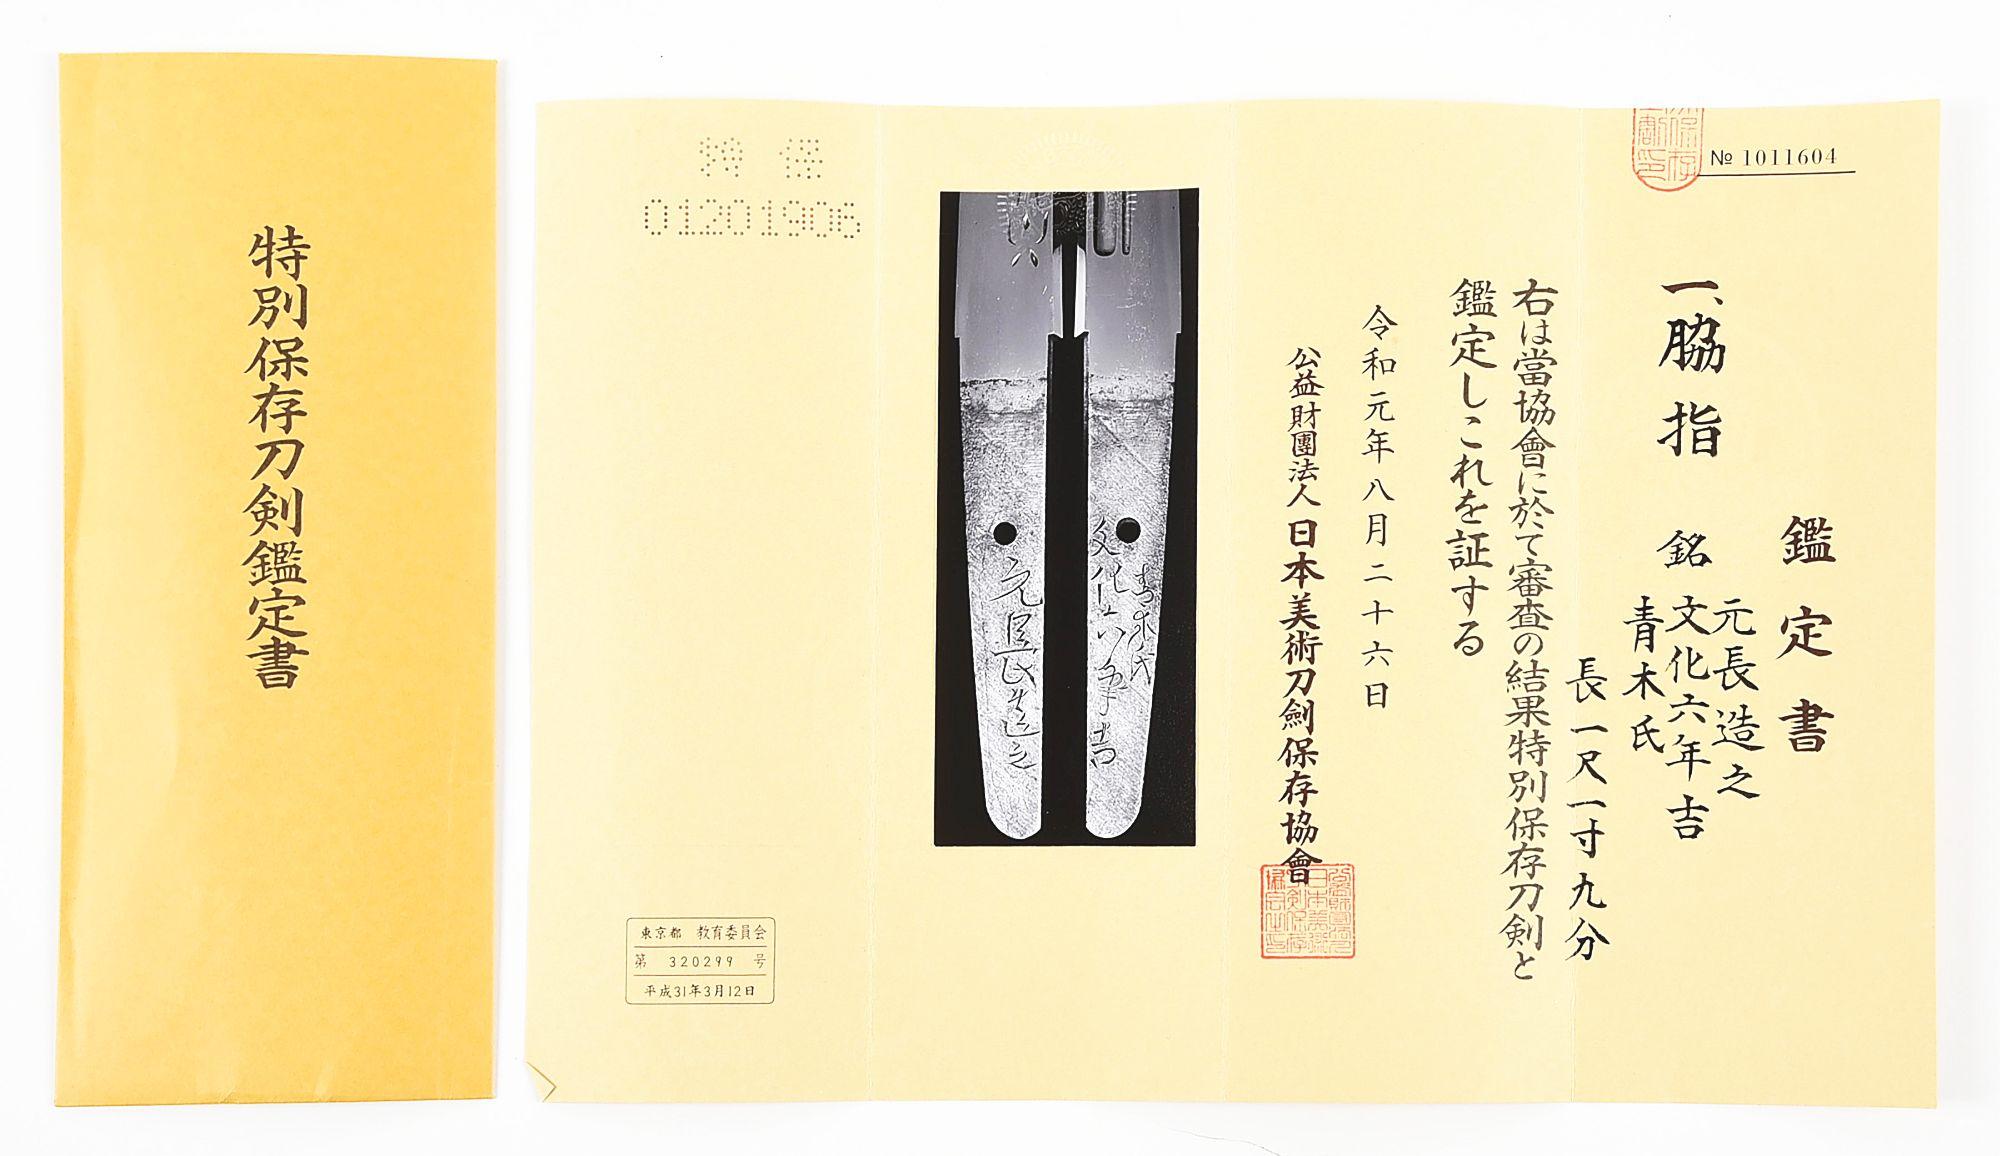 A MOTONAGA WAKIZASHI IN YOROI DOSHI FORM WITH TOKUBETSU HOZON PAPERS.